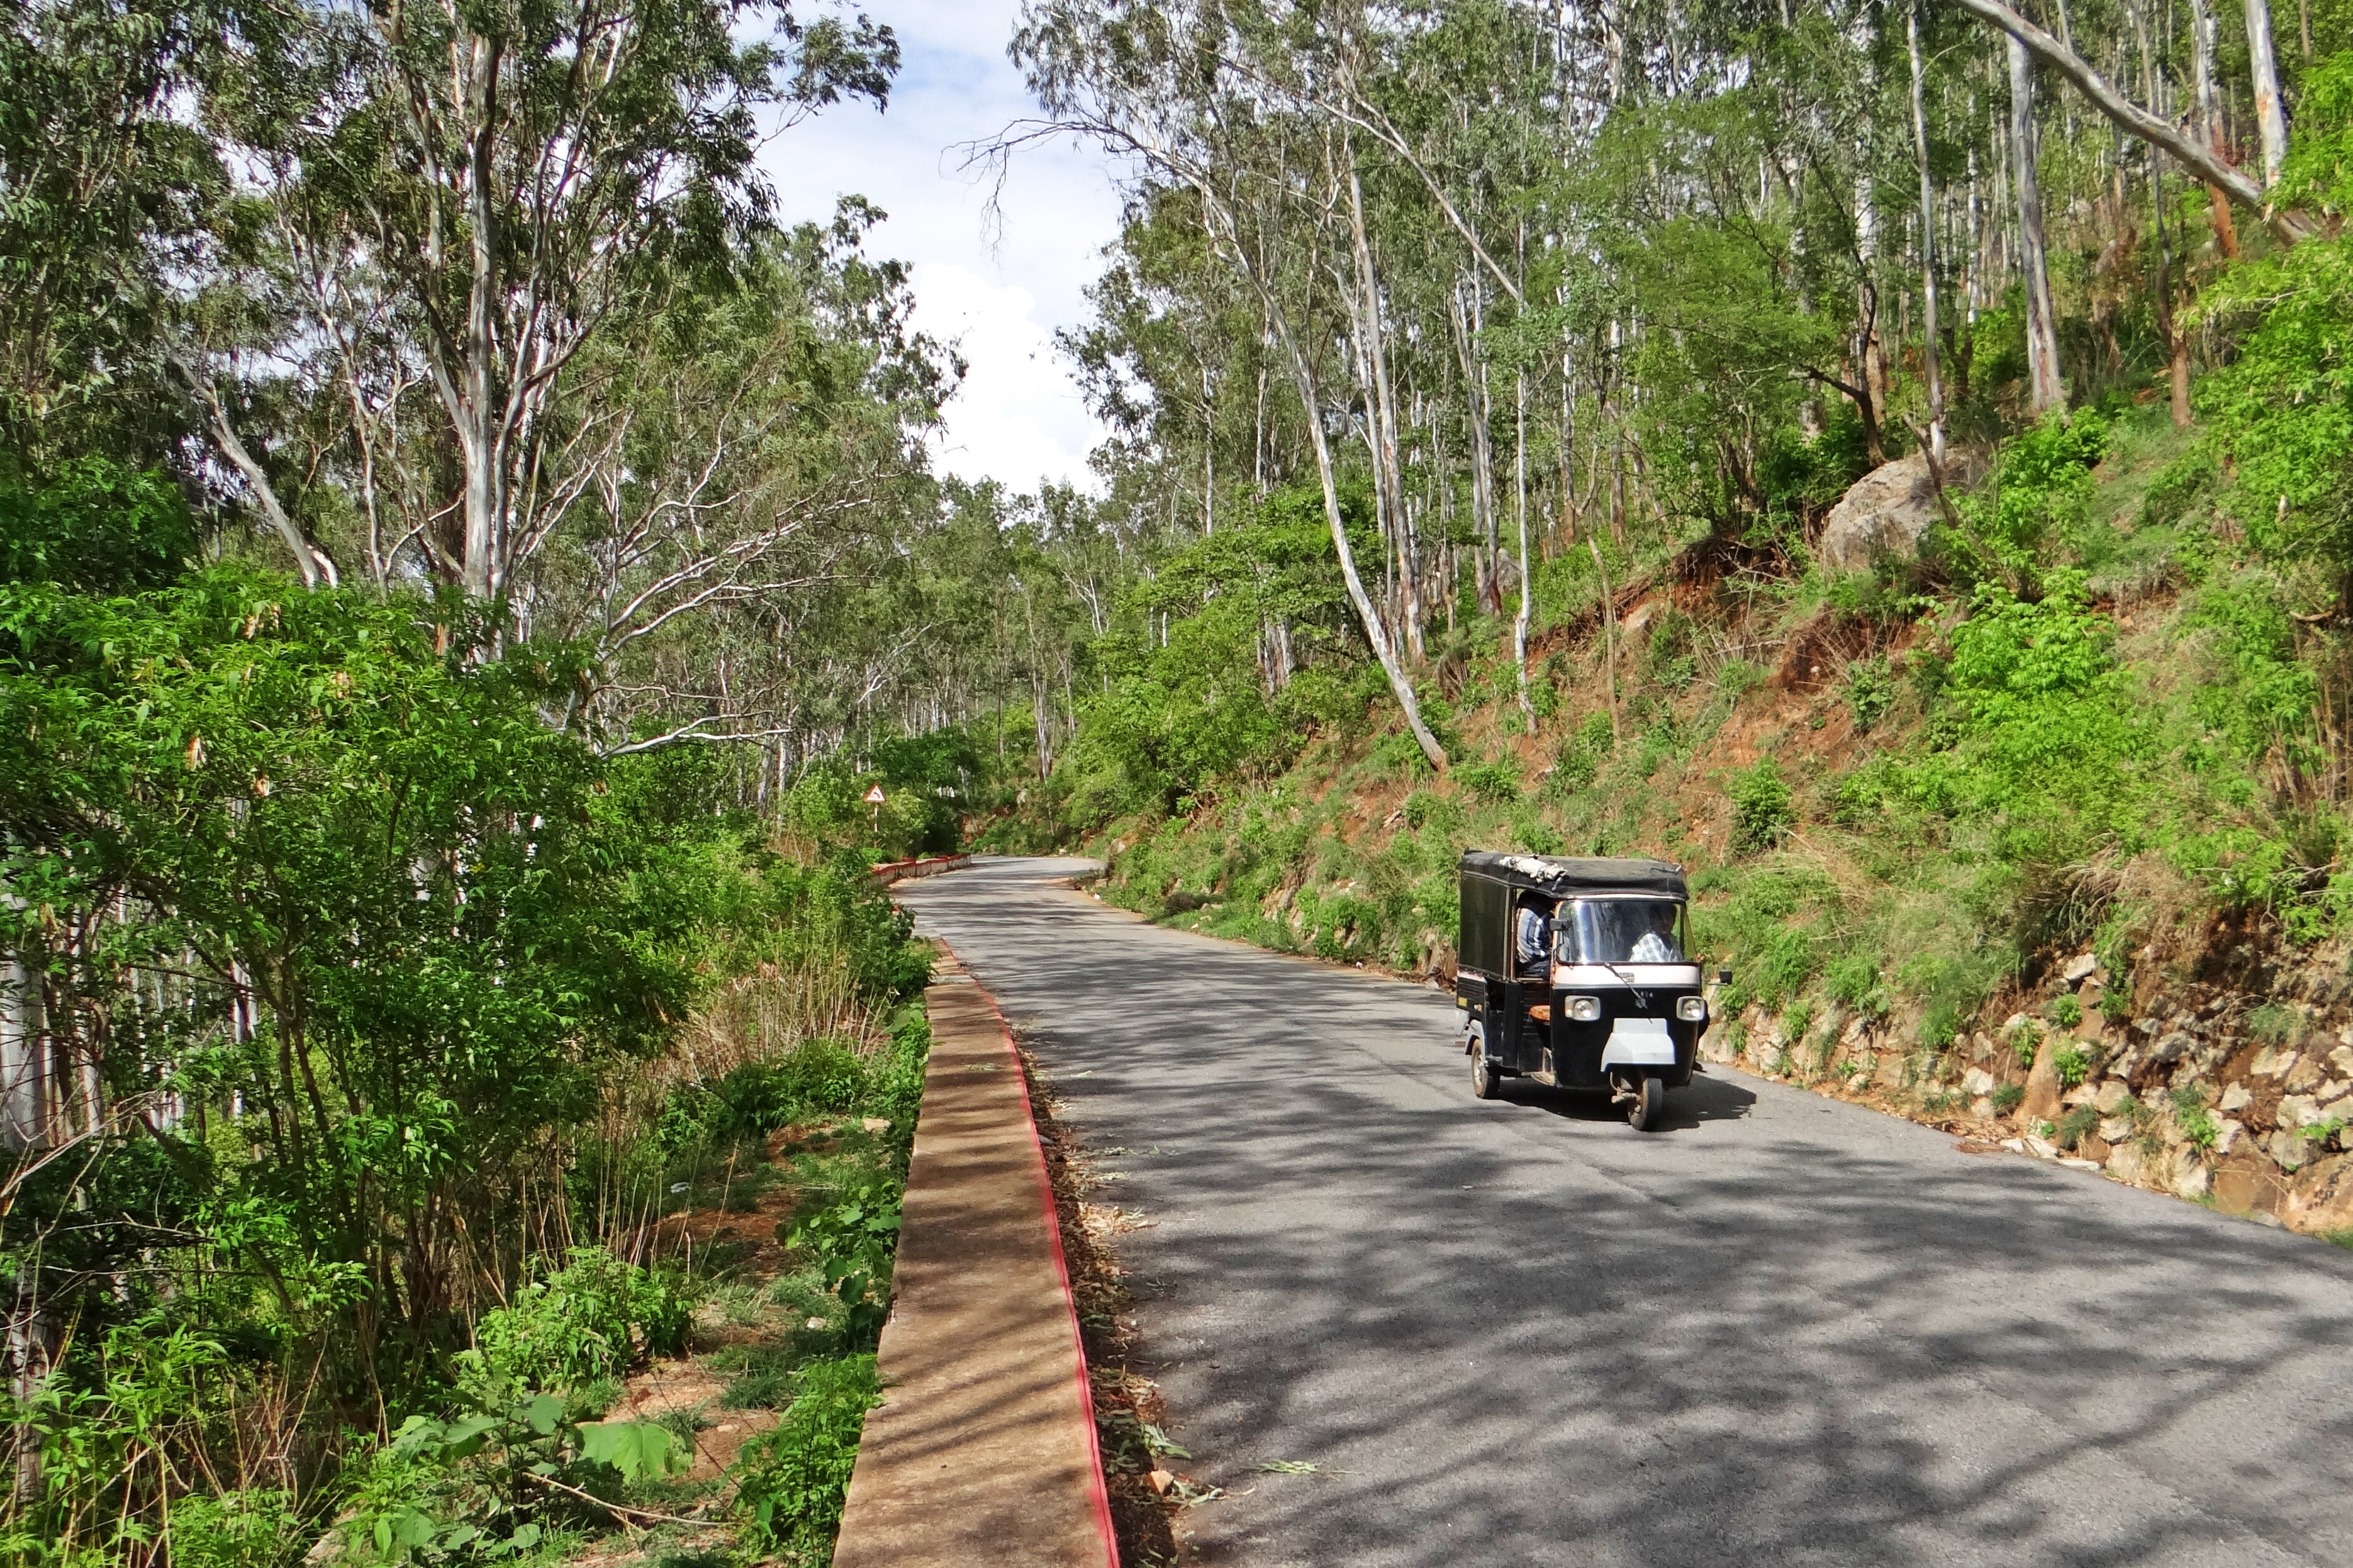 Hill Road, Auto-Rickshaw, Nandi Hills, tree, transportation